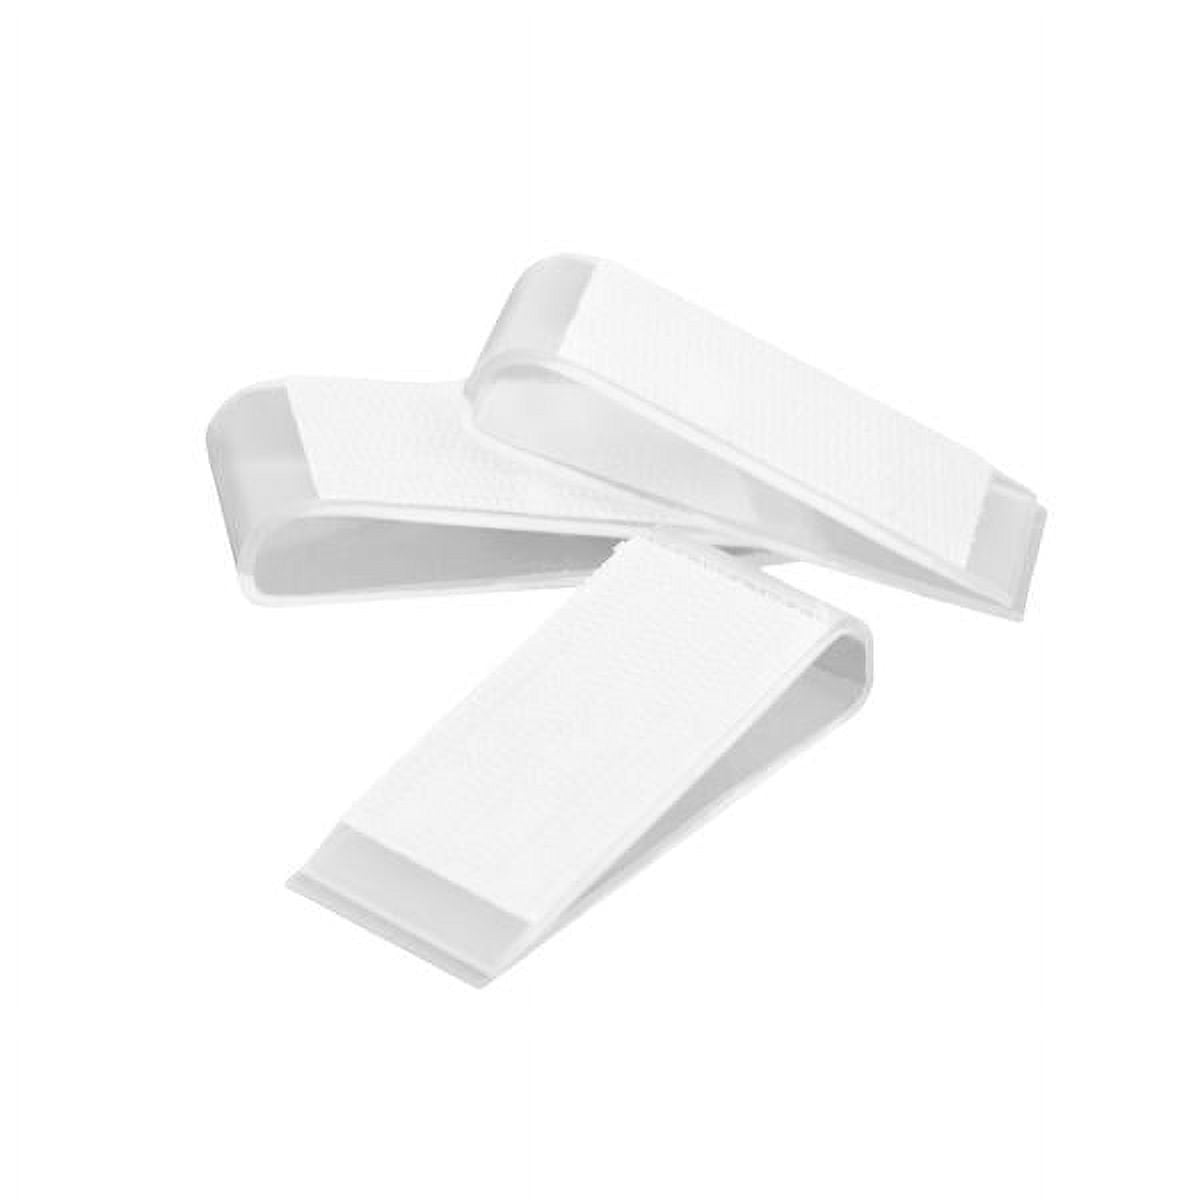 Adhesive Velcro Strips for Table Skirts - TableLinensforLess